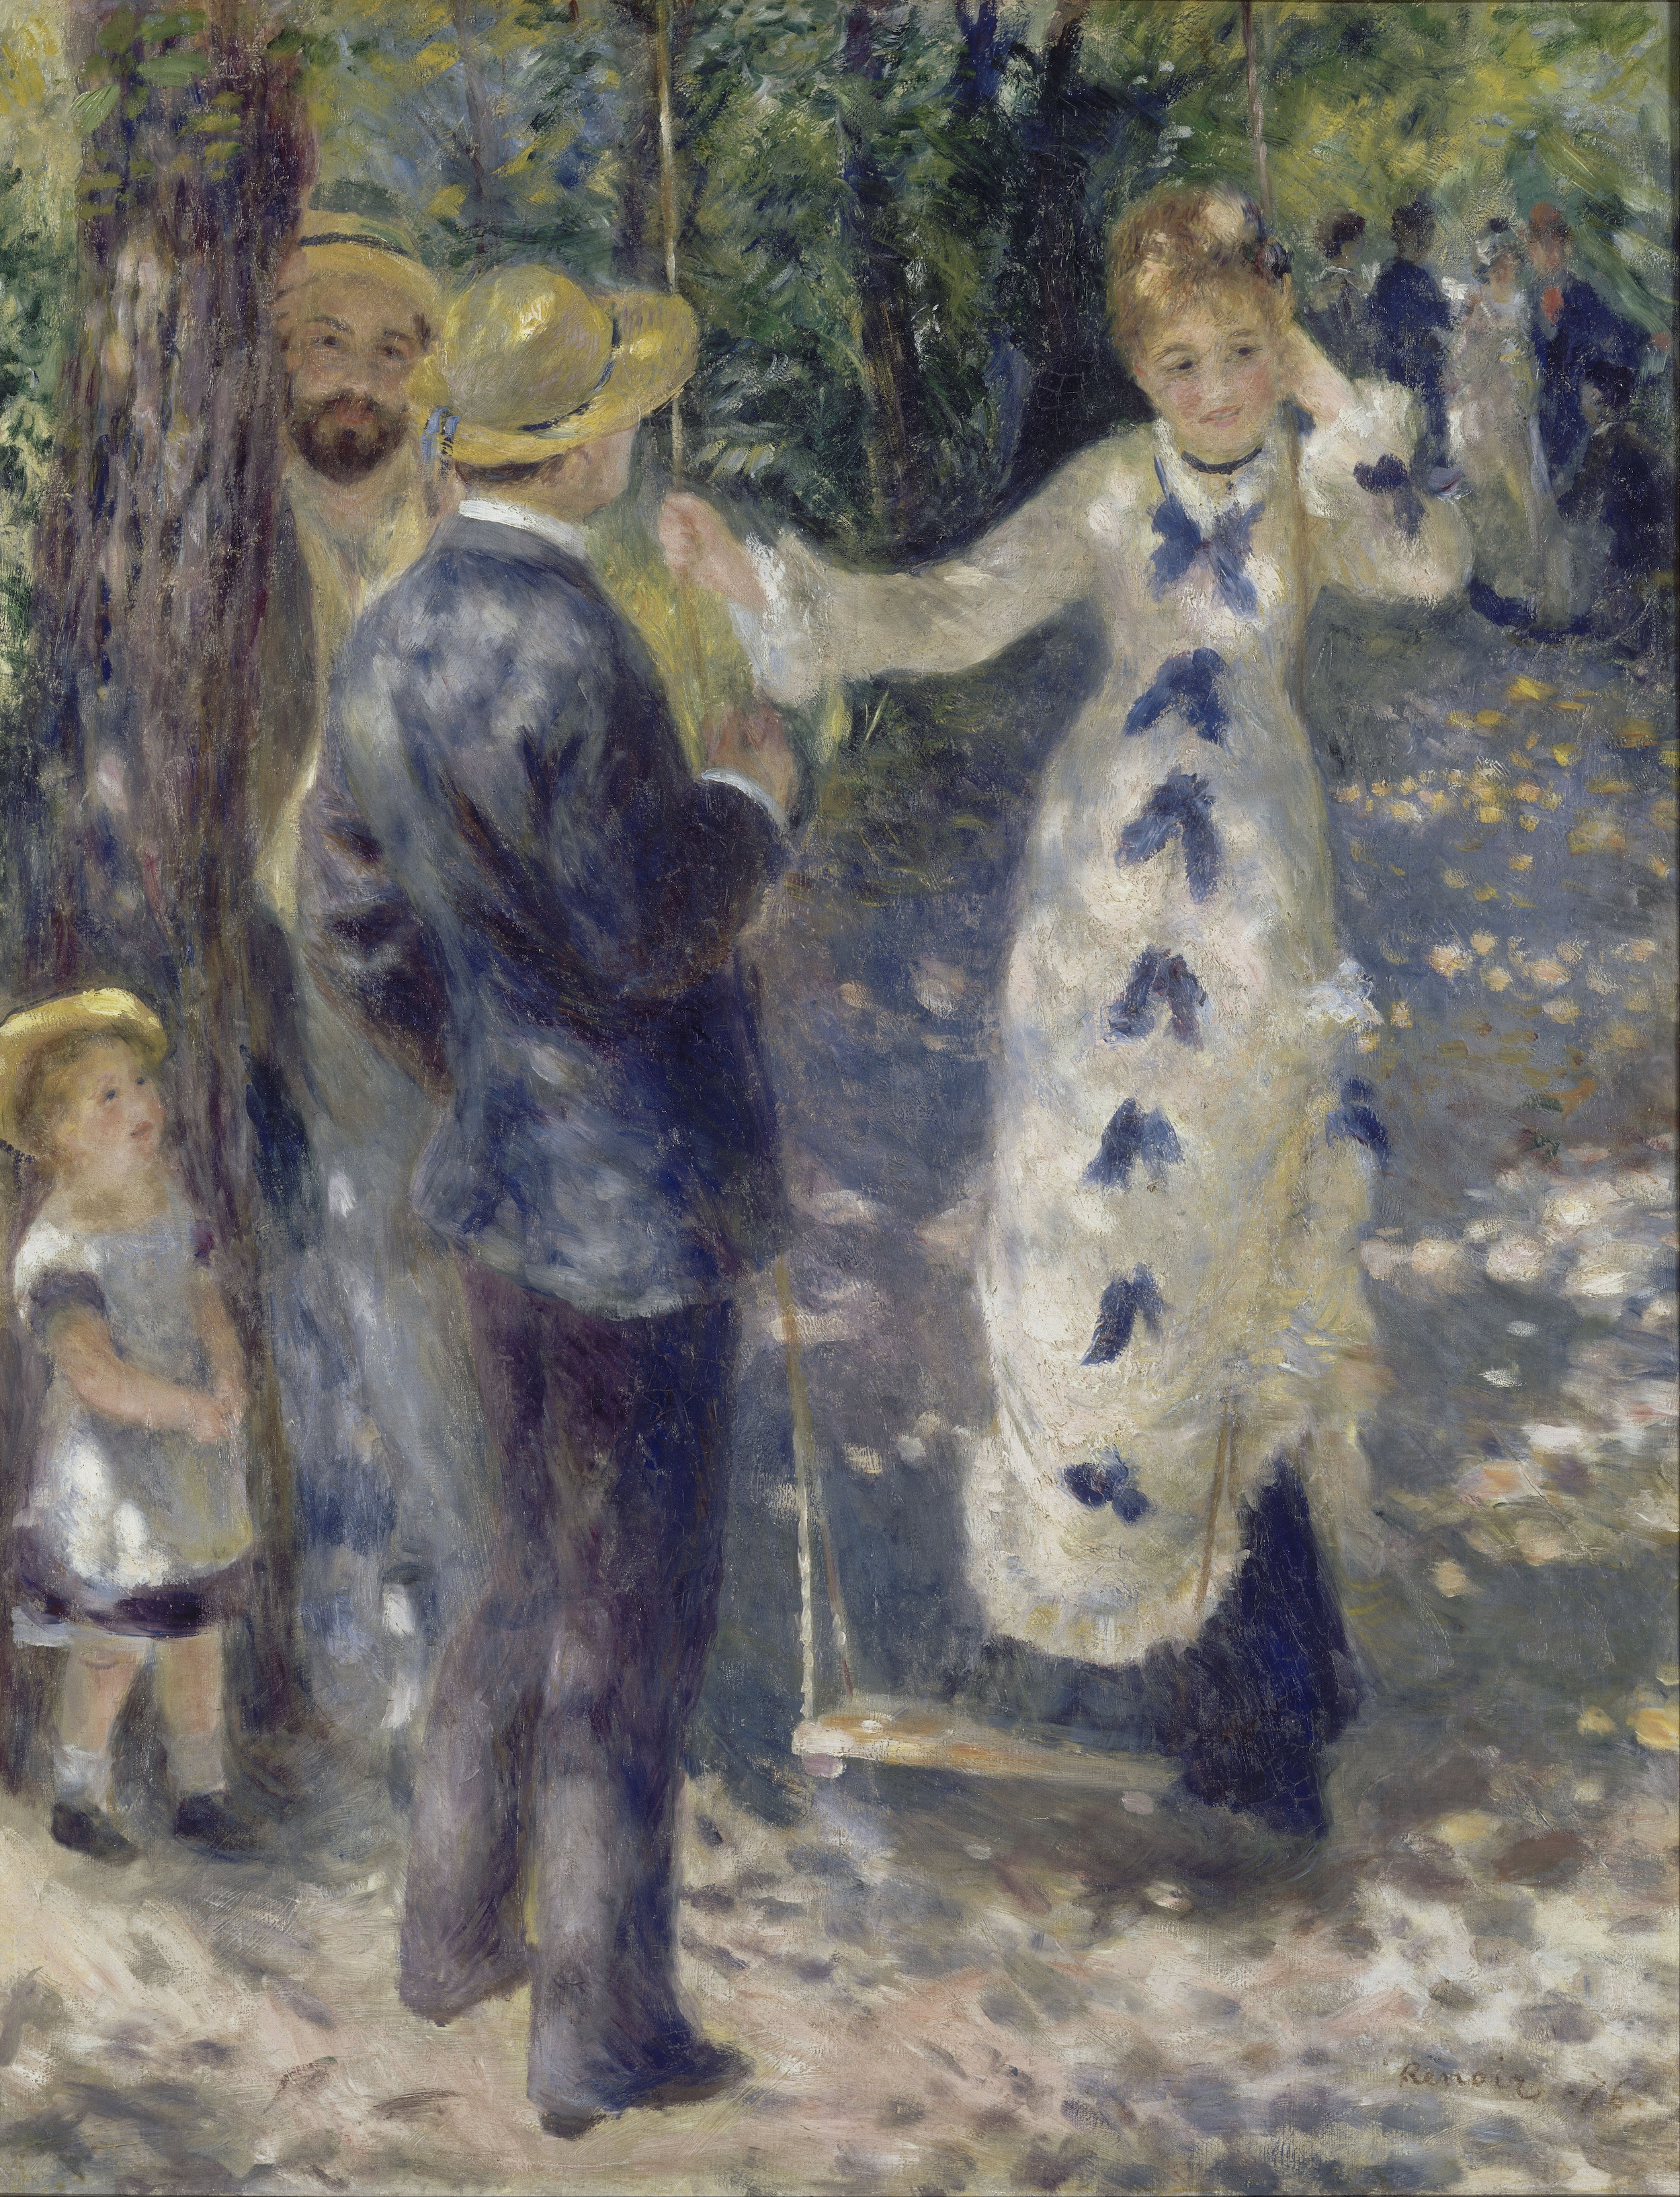 Качели by Pierre-Auguste Renoir - 1876 - 92 x 73 см 